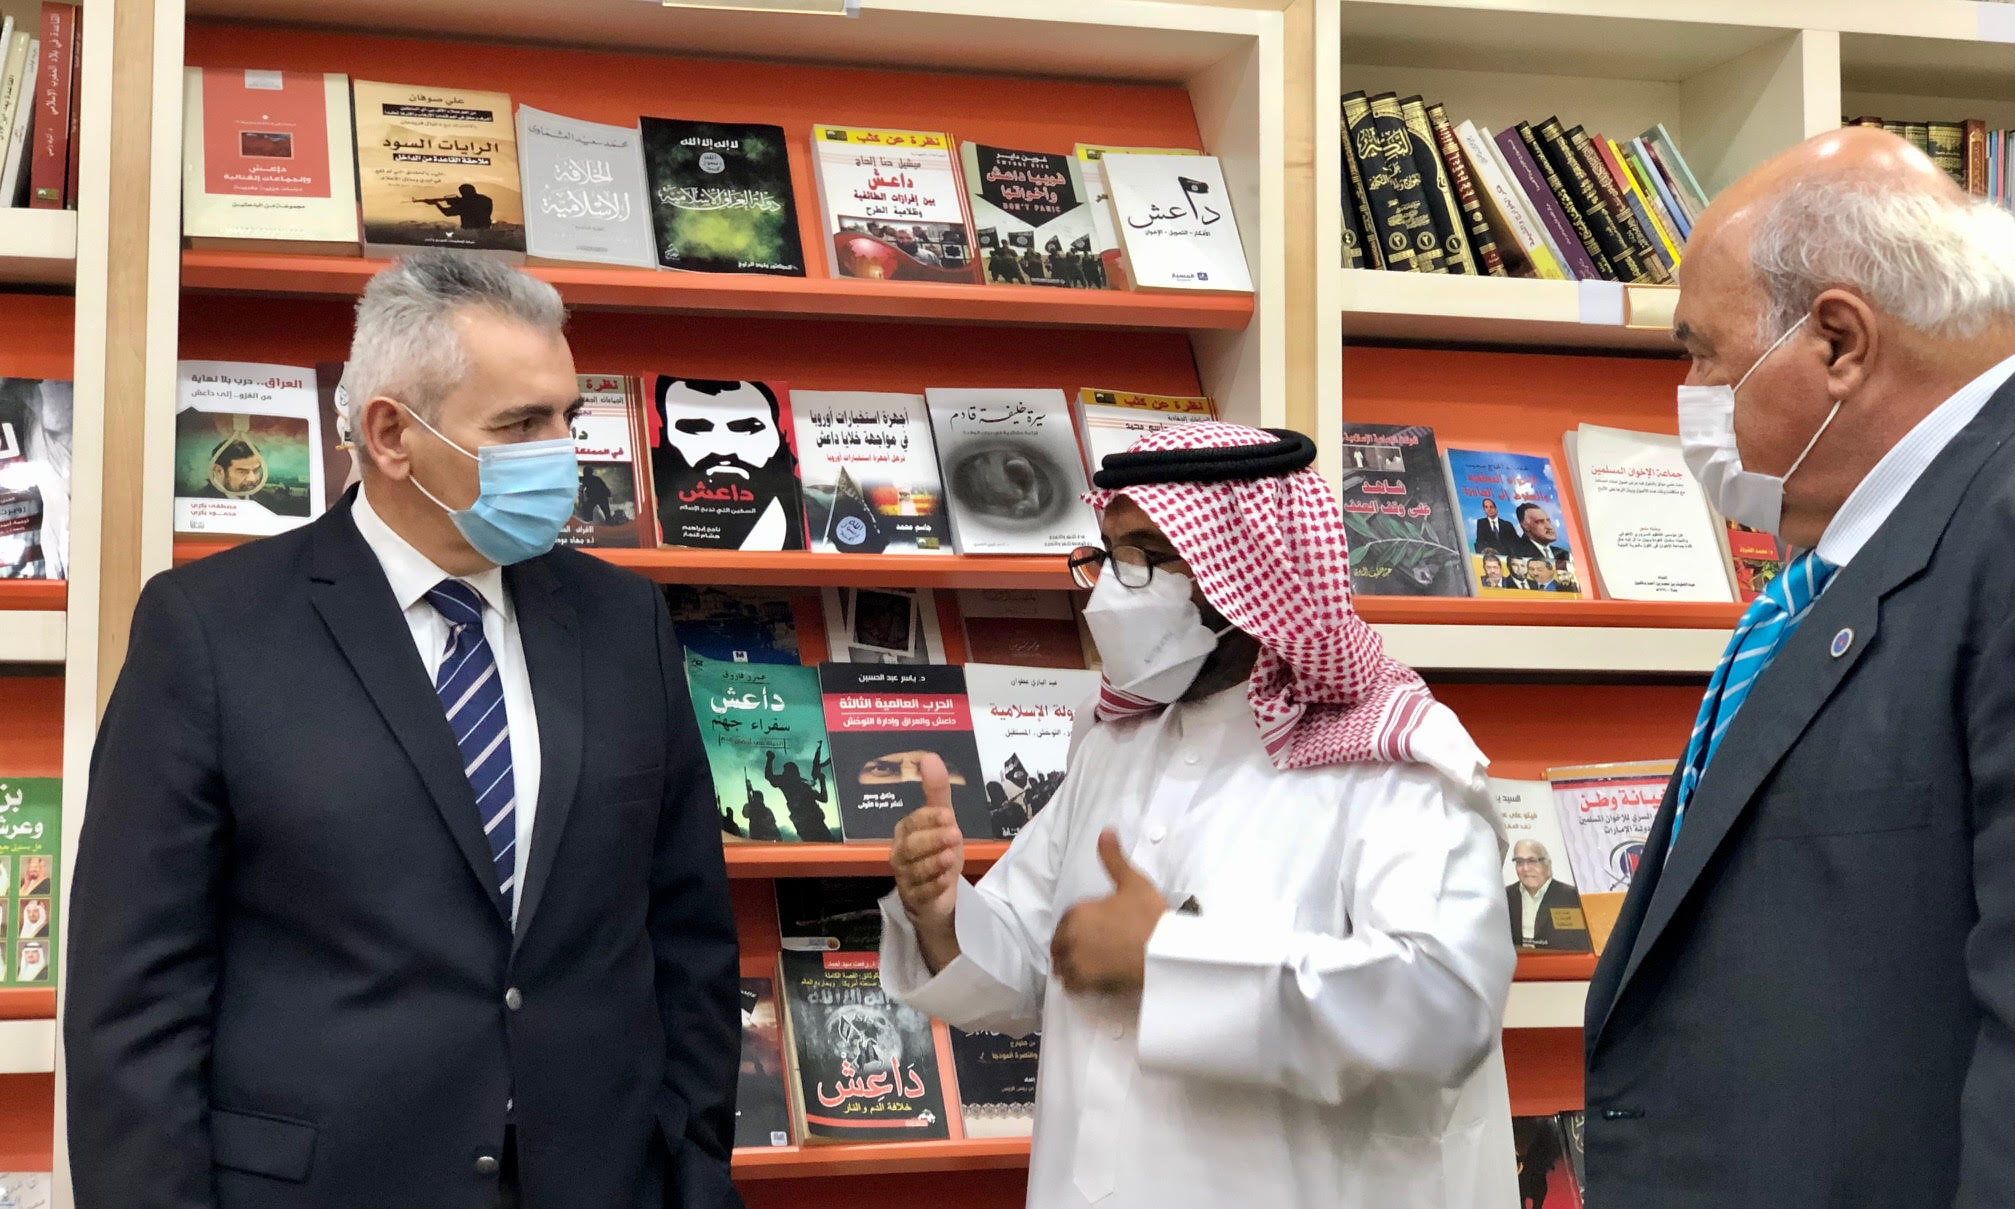 Στη βιβλιοθήκη του Intellectual Warfare Center έχουν συγκεντρωθεί εκδόσεις που παραποιούν τα διδάγματα του Ισλάμ και προάγουν τον φονταμενταλισμό.